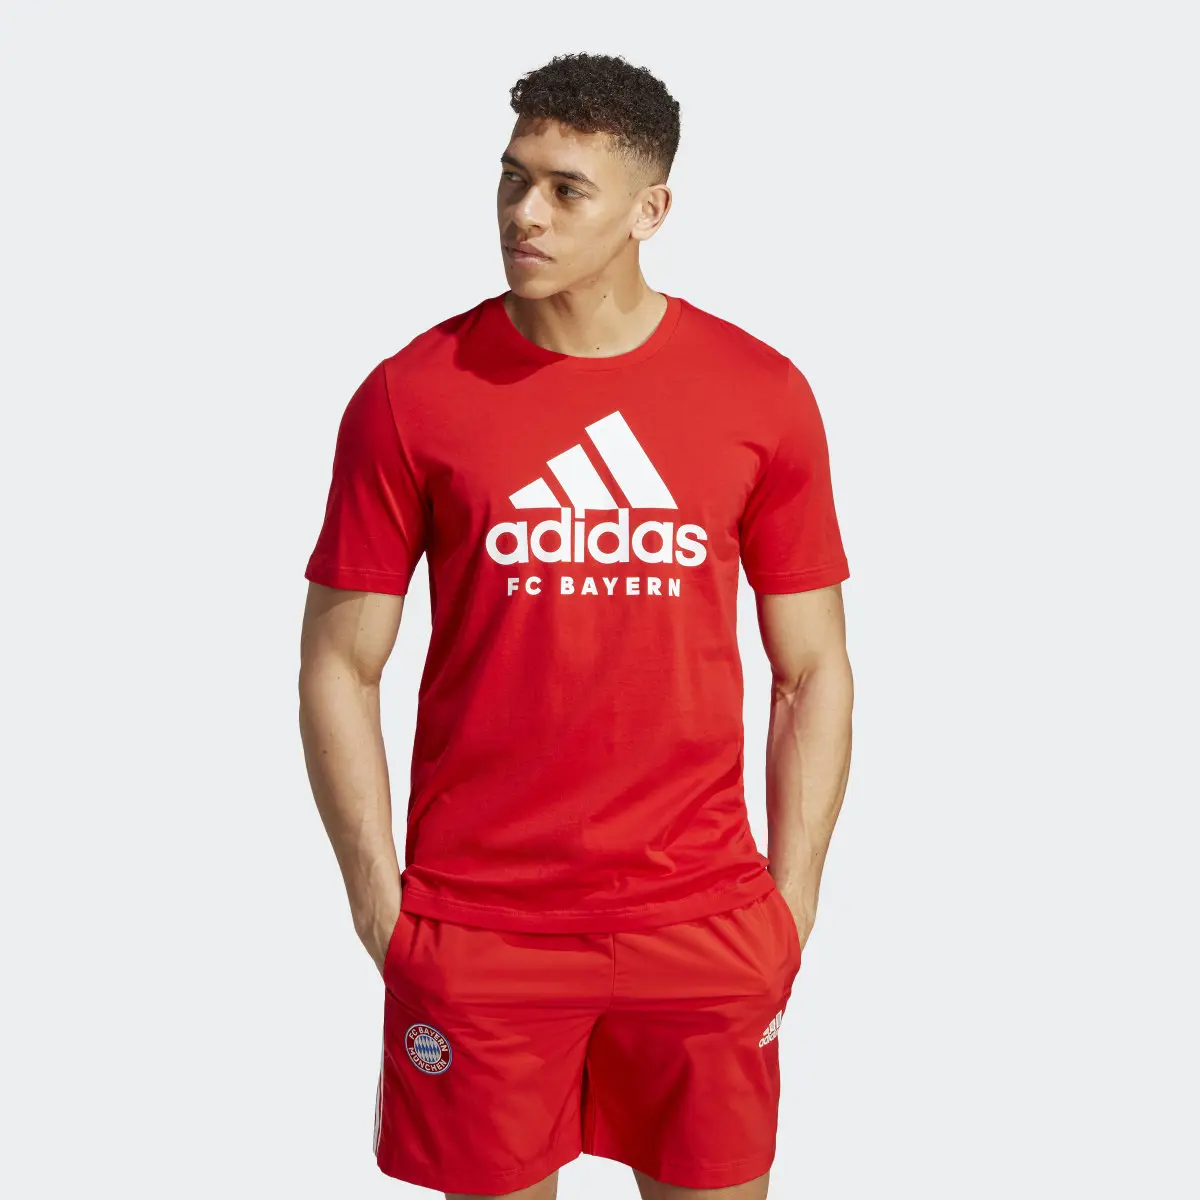 Adidas T-shirt DNA do FC Bayern München. 2